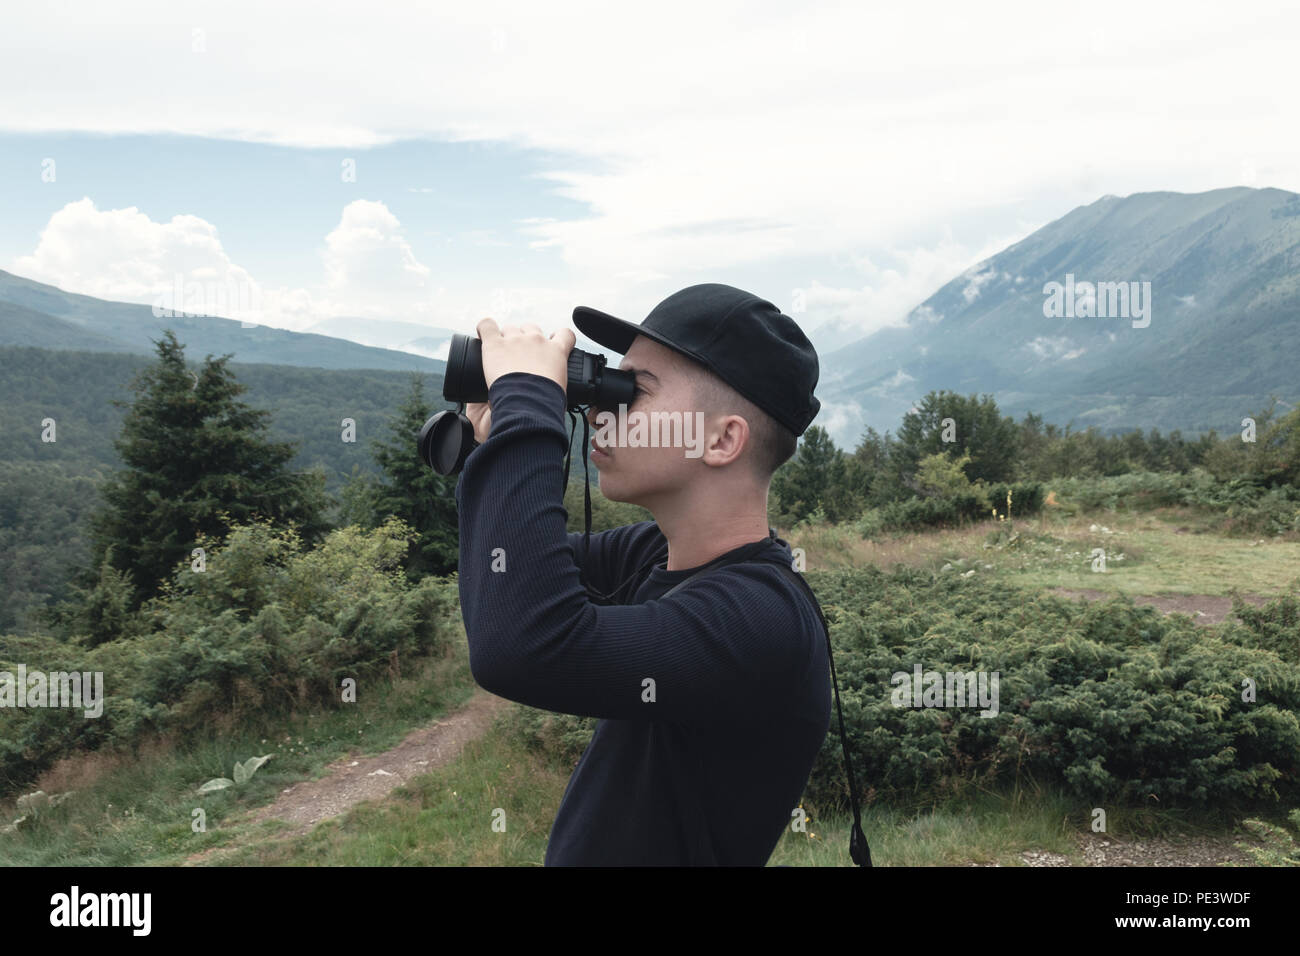 Randonneur regardant à travers des jumelles en face de collines et de montagnes. Prevalla, Prizren, Kosovo Banque D'Images